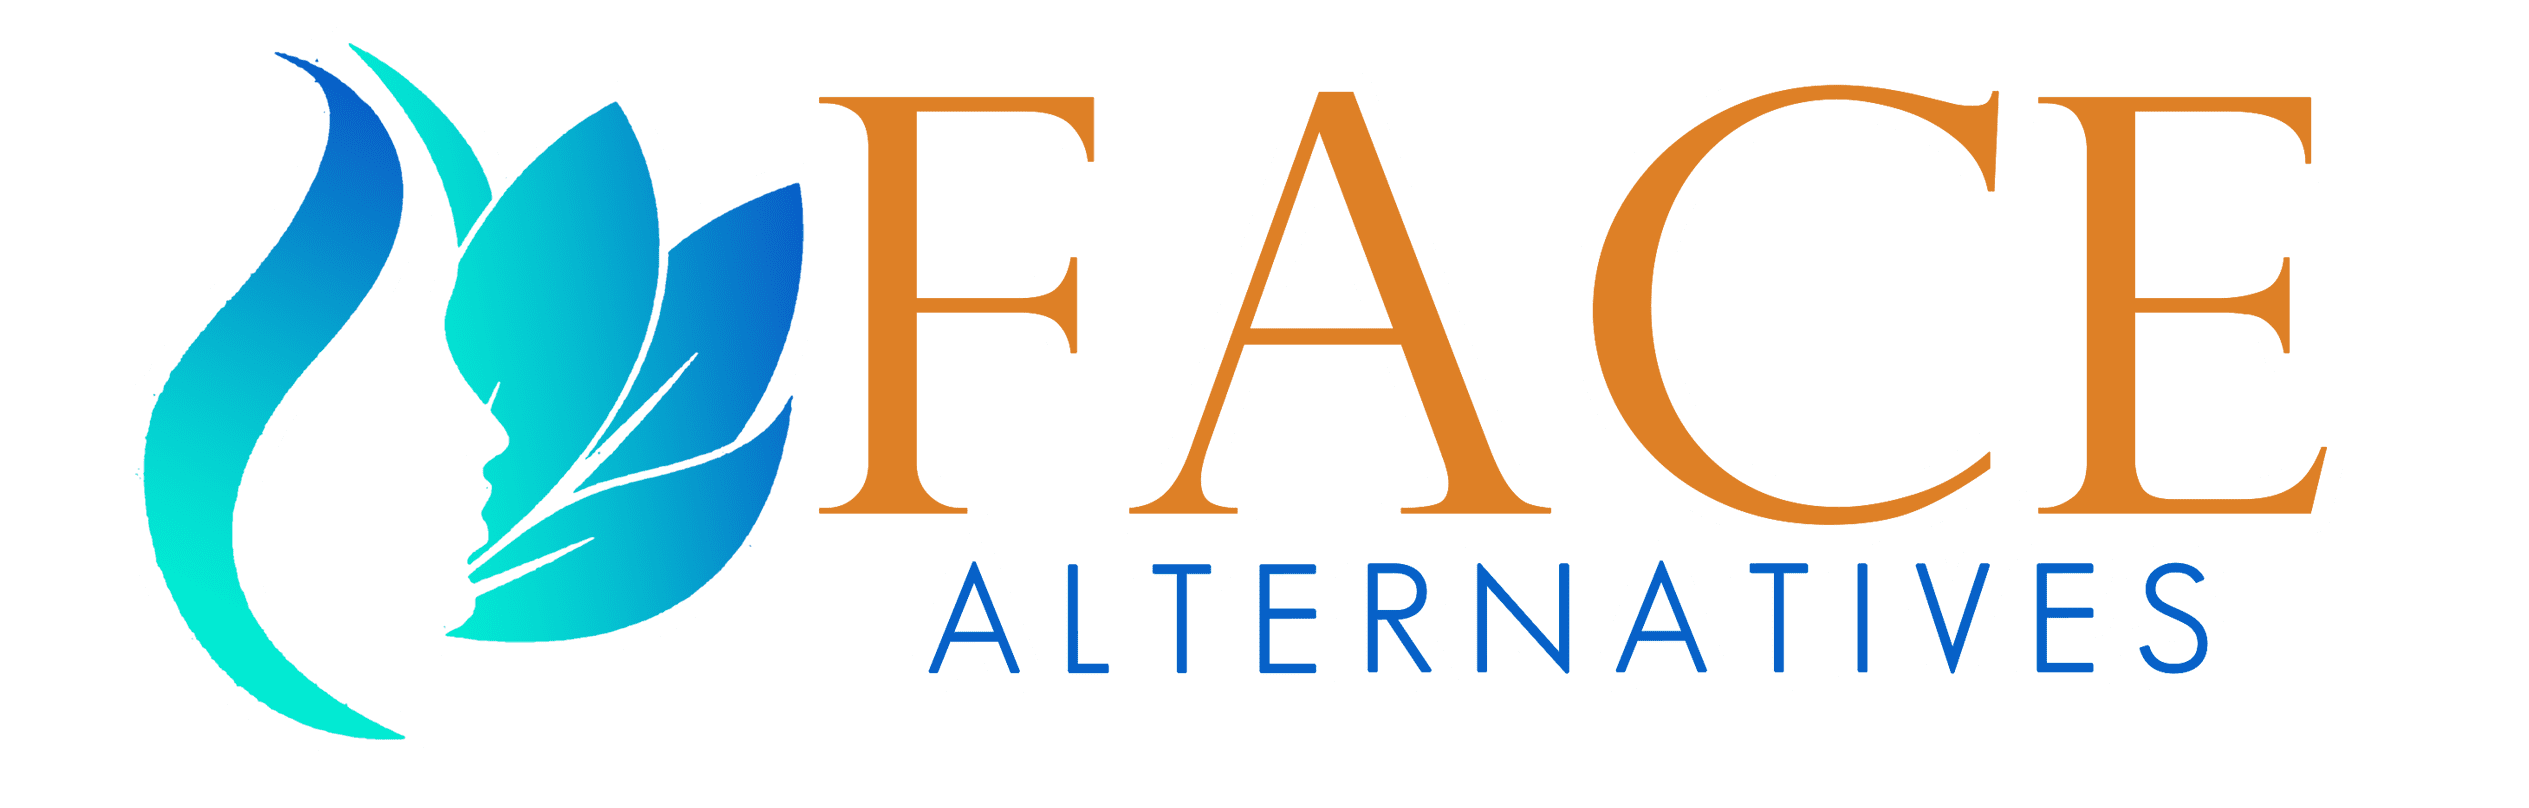 logo-face-alternatives-001